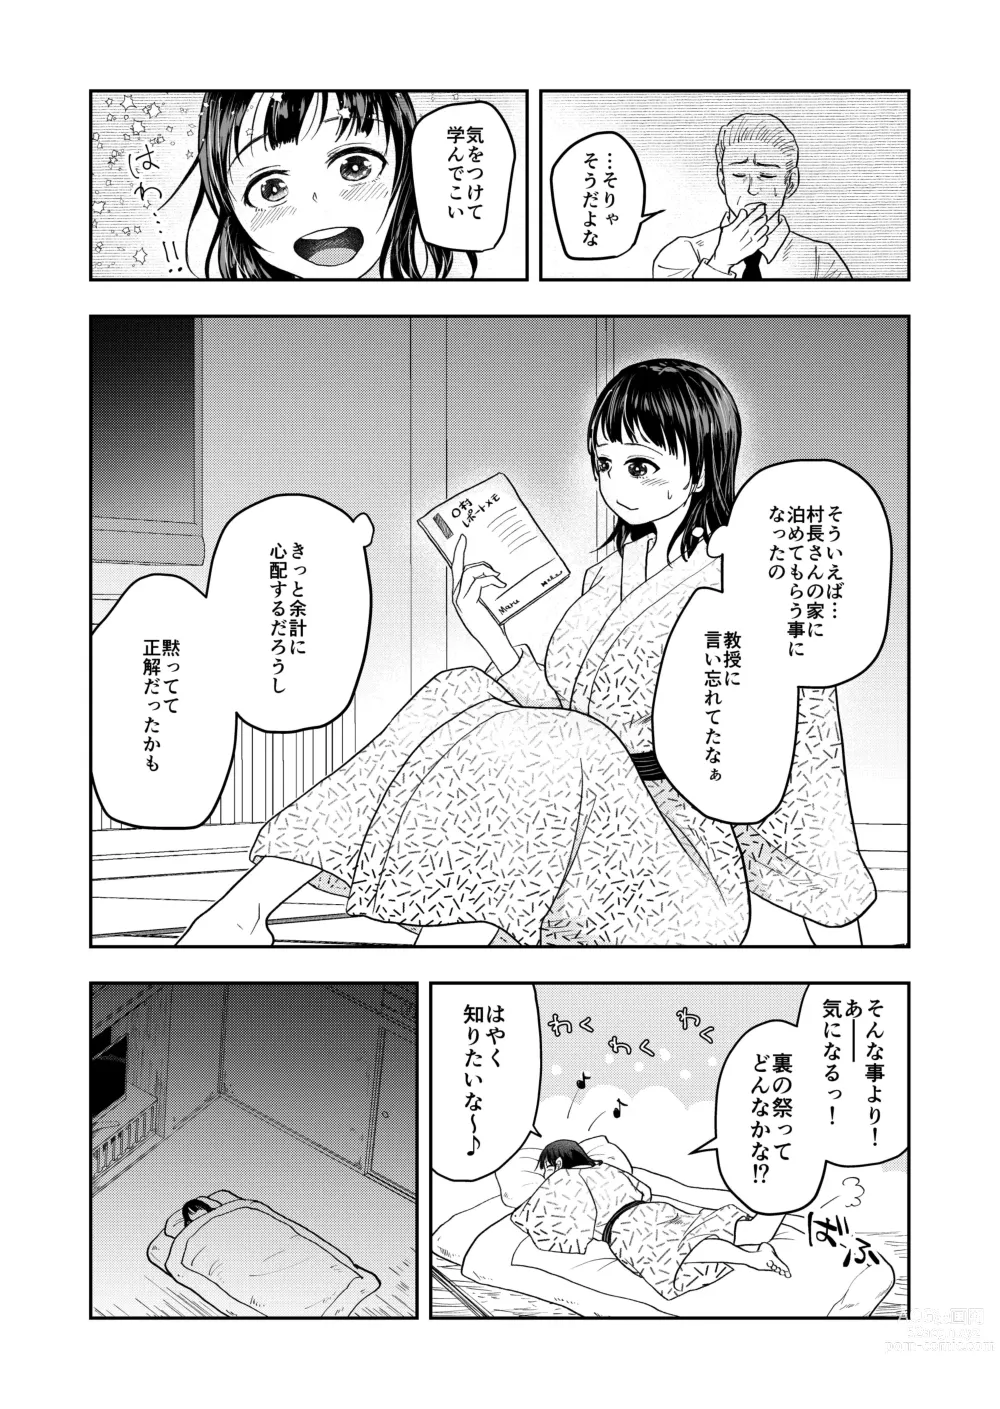 Page 8 of doujinshi Inaka no Omatsuri